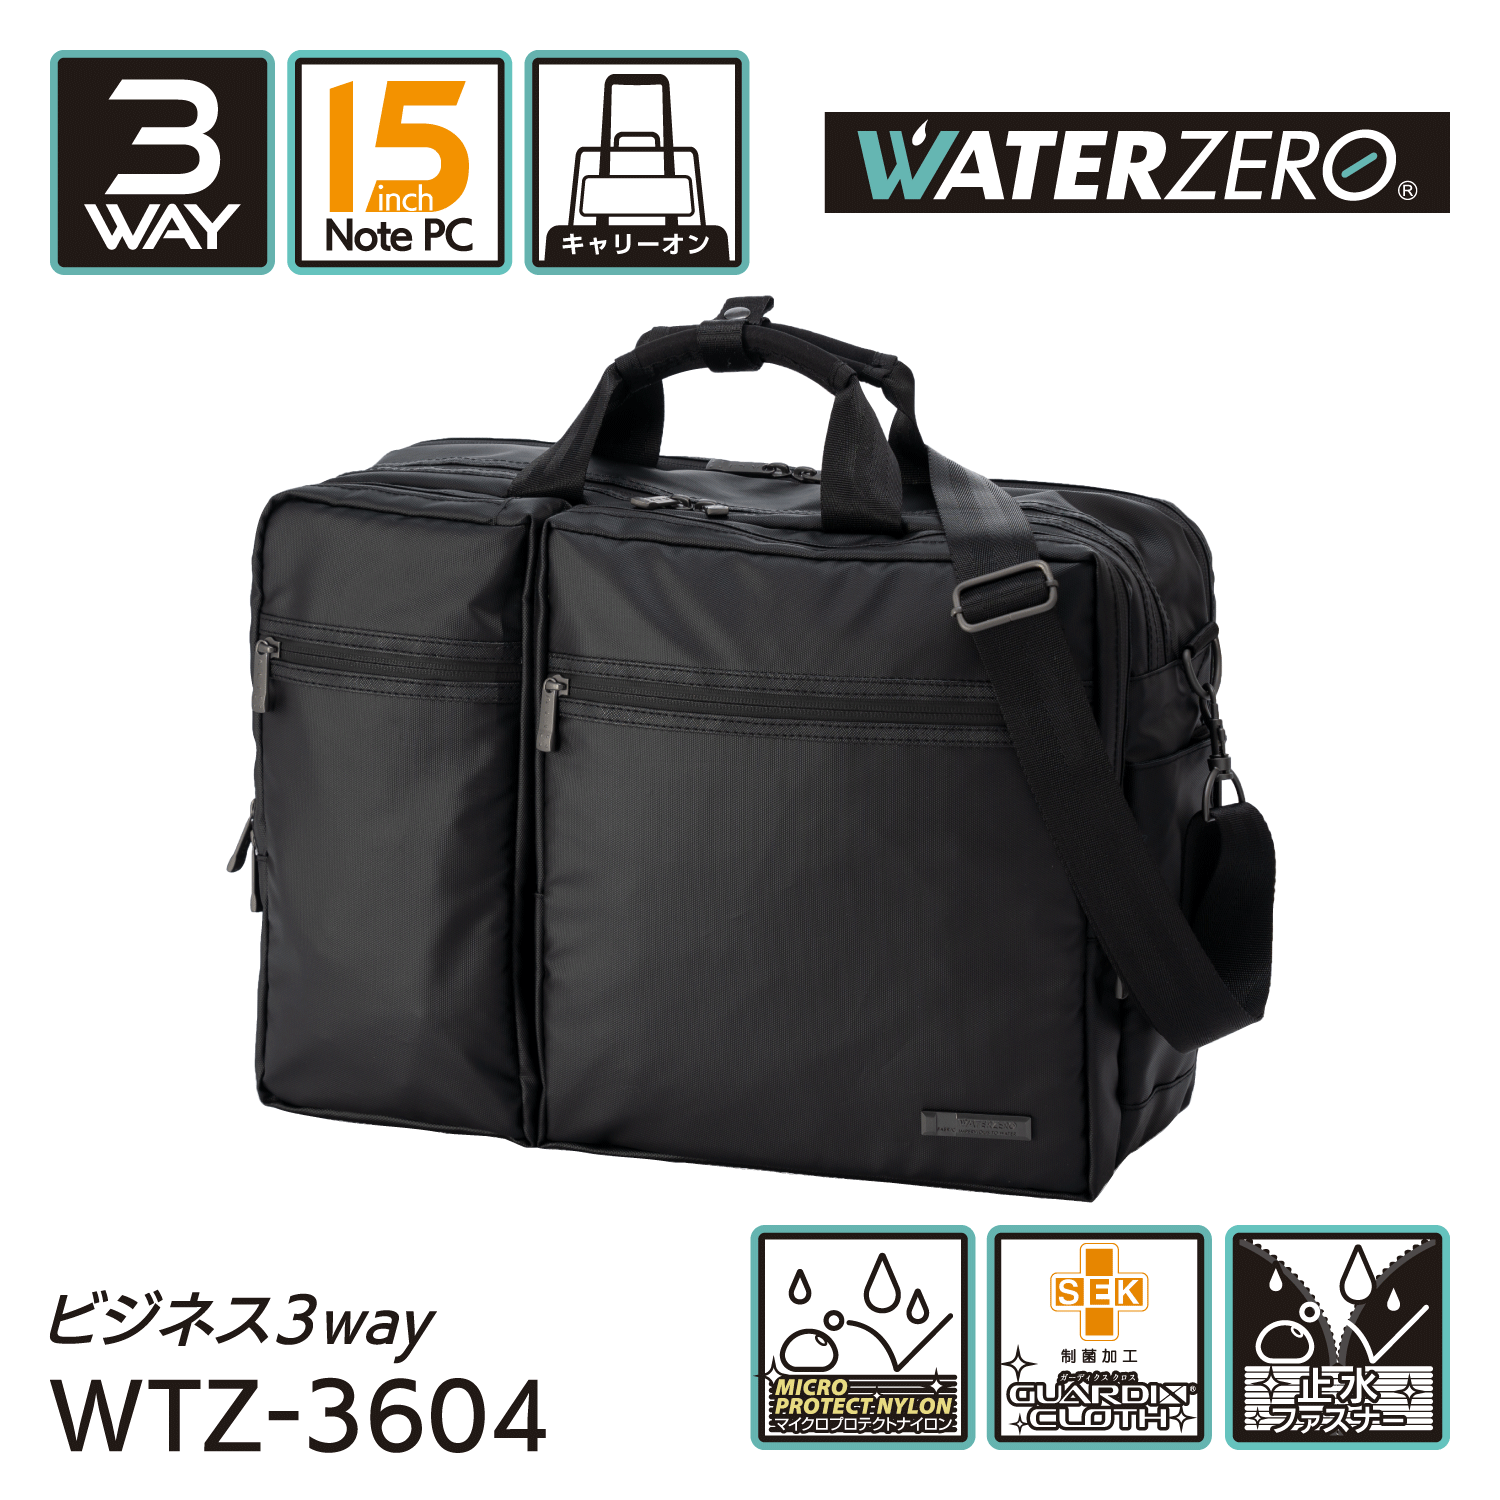 軽量・強撥水シリーズ 止水ファスナー搭載 抗菌加工 NEW WATER ZERO ビジネス3WAY WTZ-3604